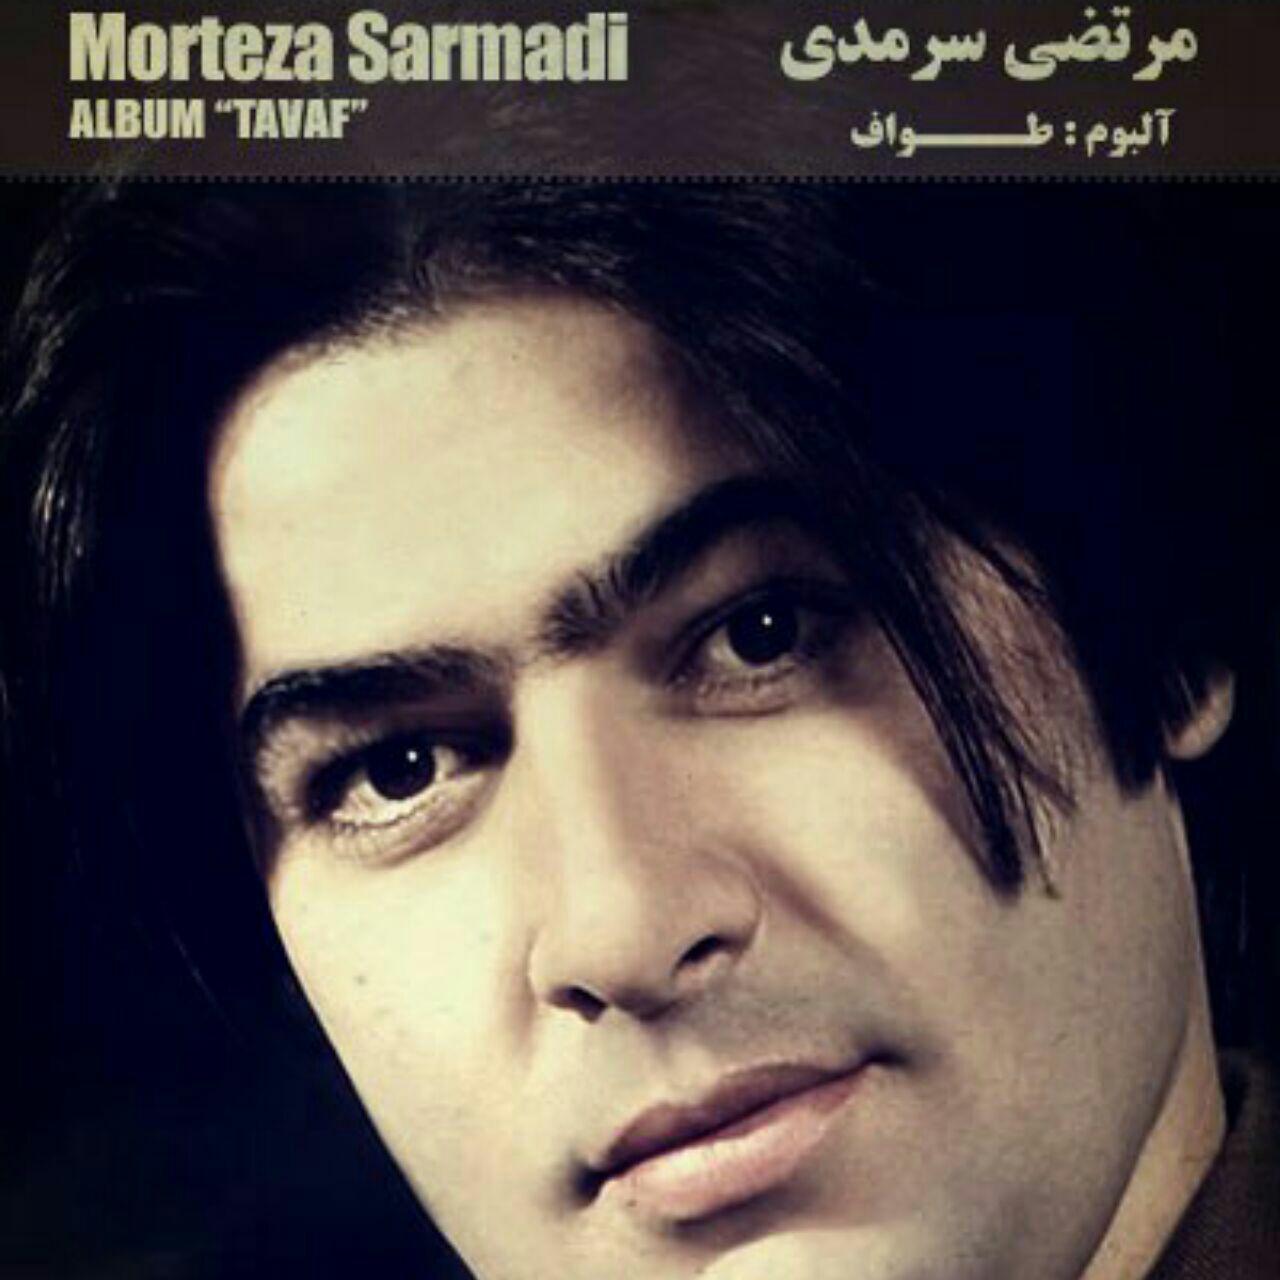  دانلود آهنگ جدید مرتضی سرمدی - سِوِمِم | Download New Music By Morteza Sarmadi - Sevemem